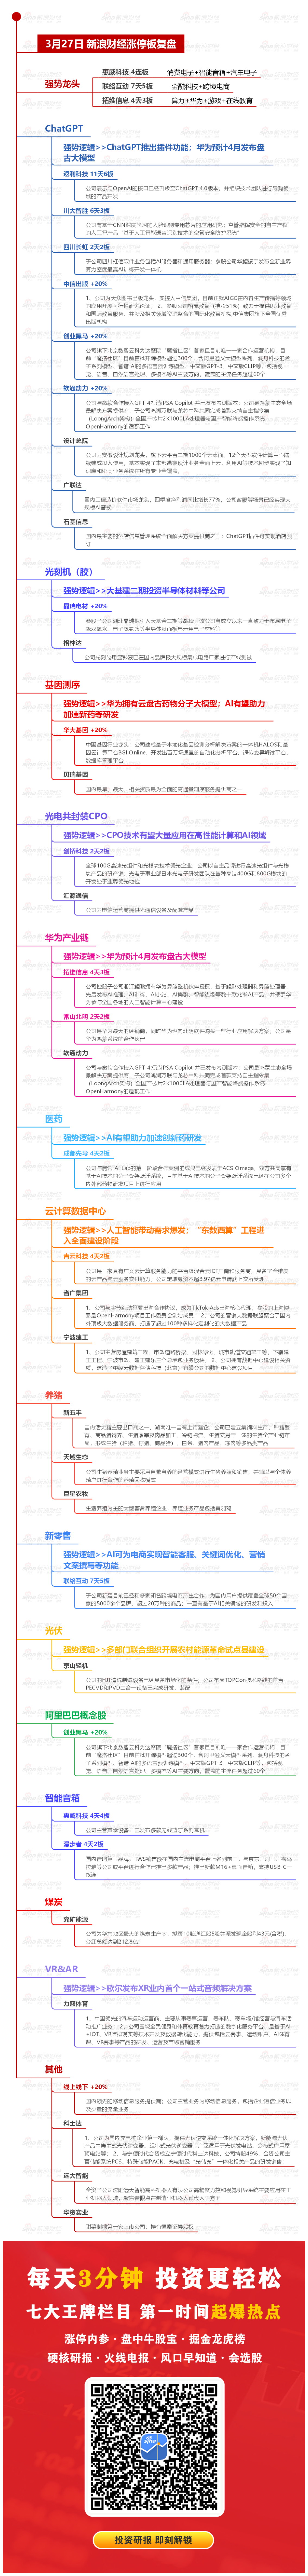 3月27日沪深两市涨停分析：惠威科技晋级4连板 联络互动录得7天5板